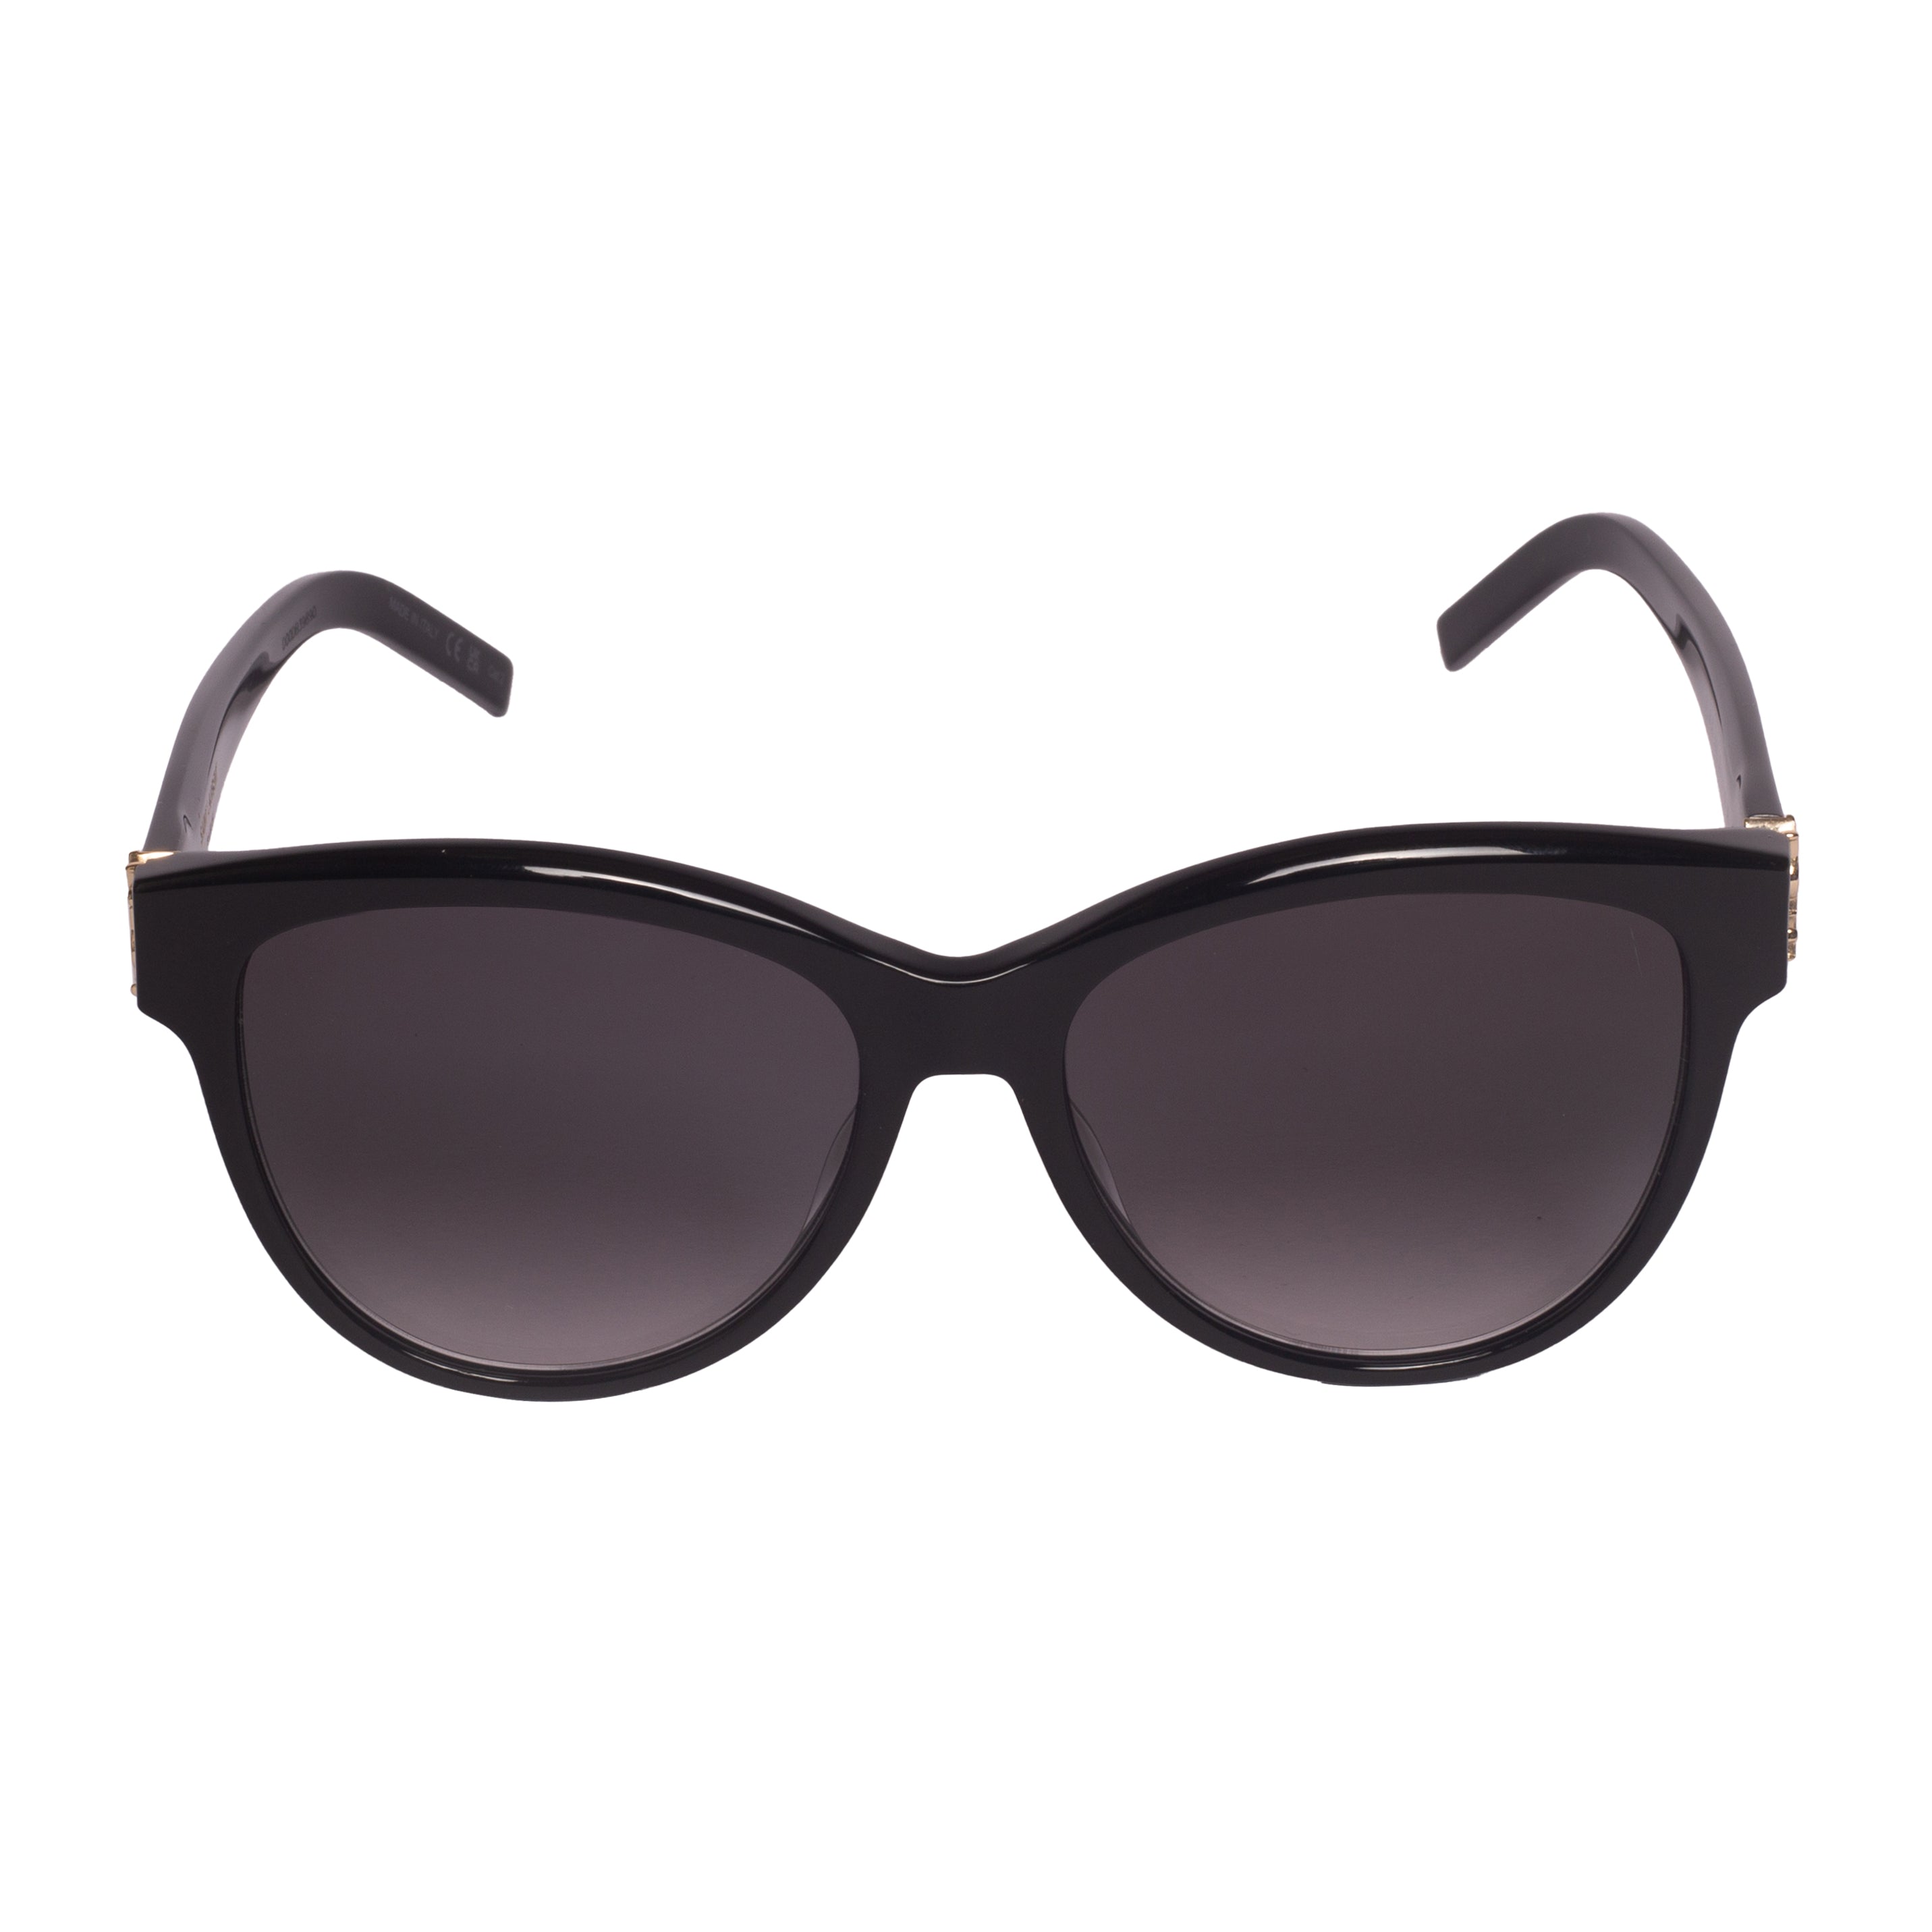 Saint Laurent-SL M107-55-002 Sunglasses - Premium Sunglasses from Saint Laurent - Just Rs. 26420! Shop now at Laxmi Opticians